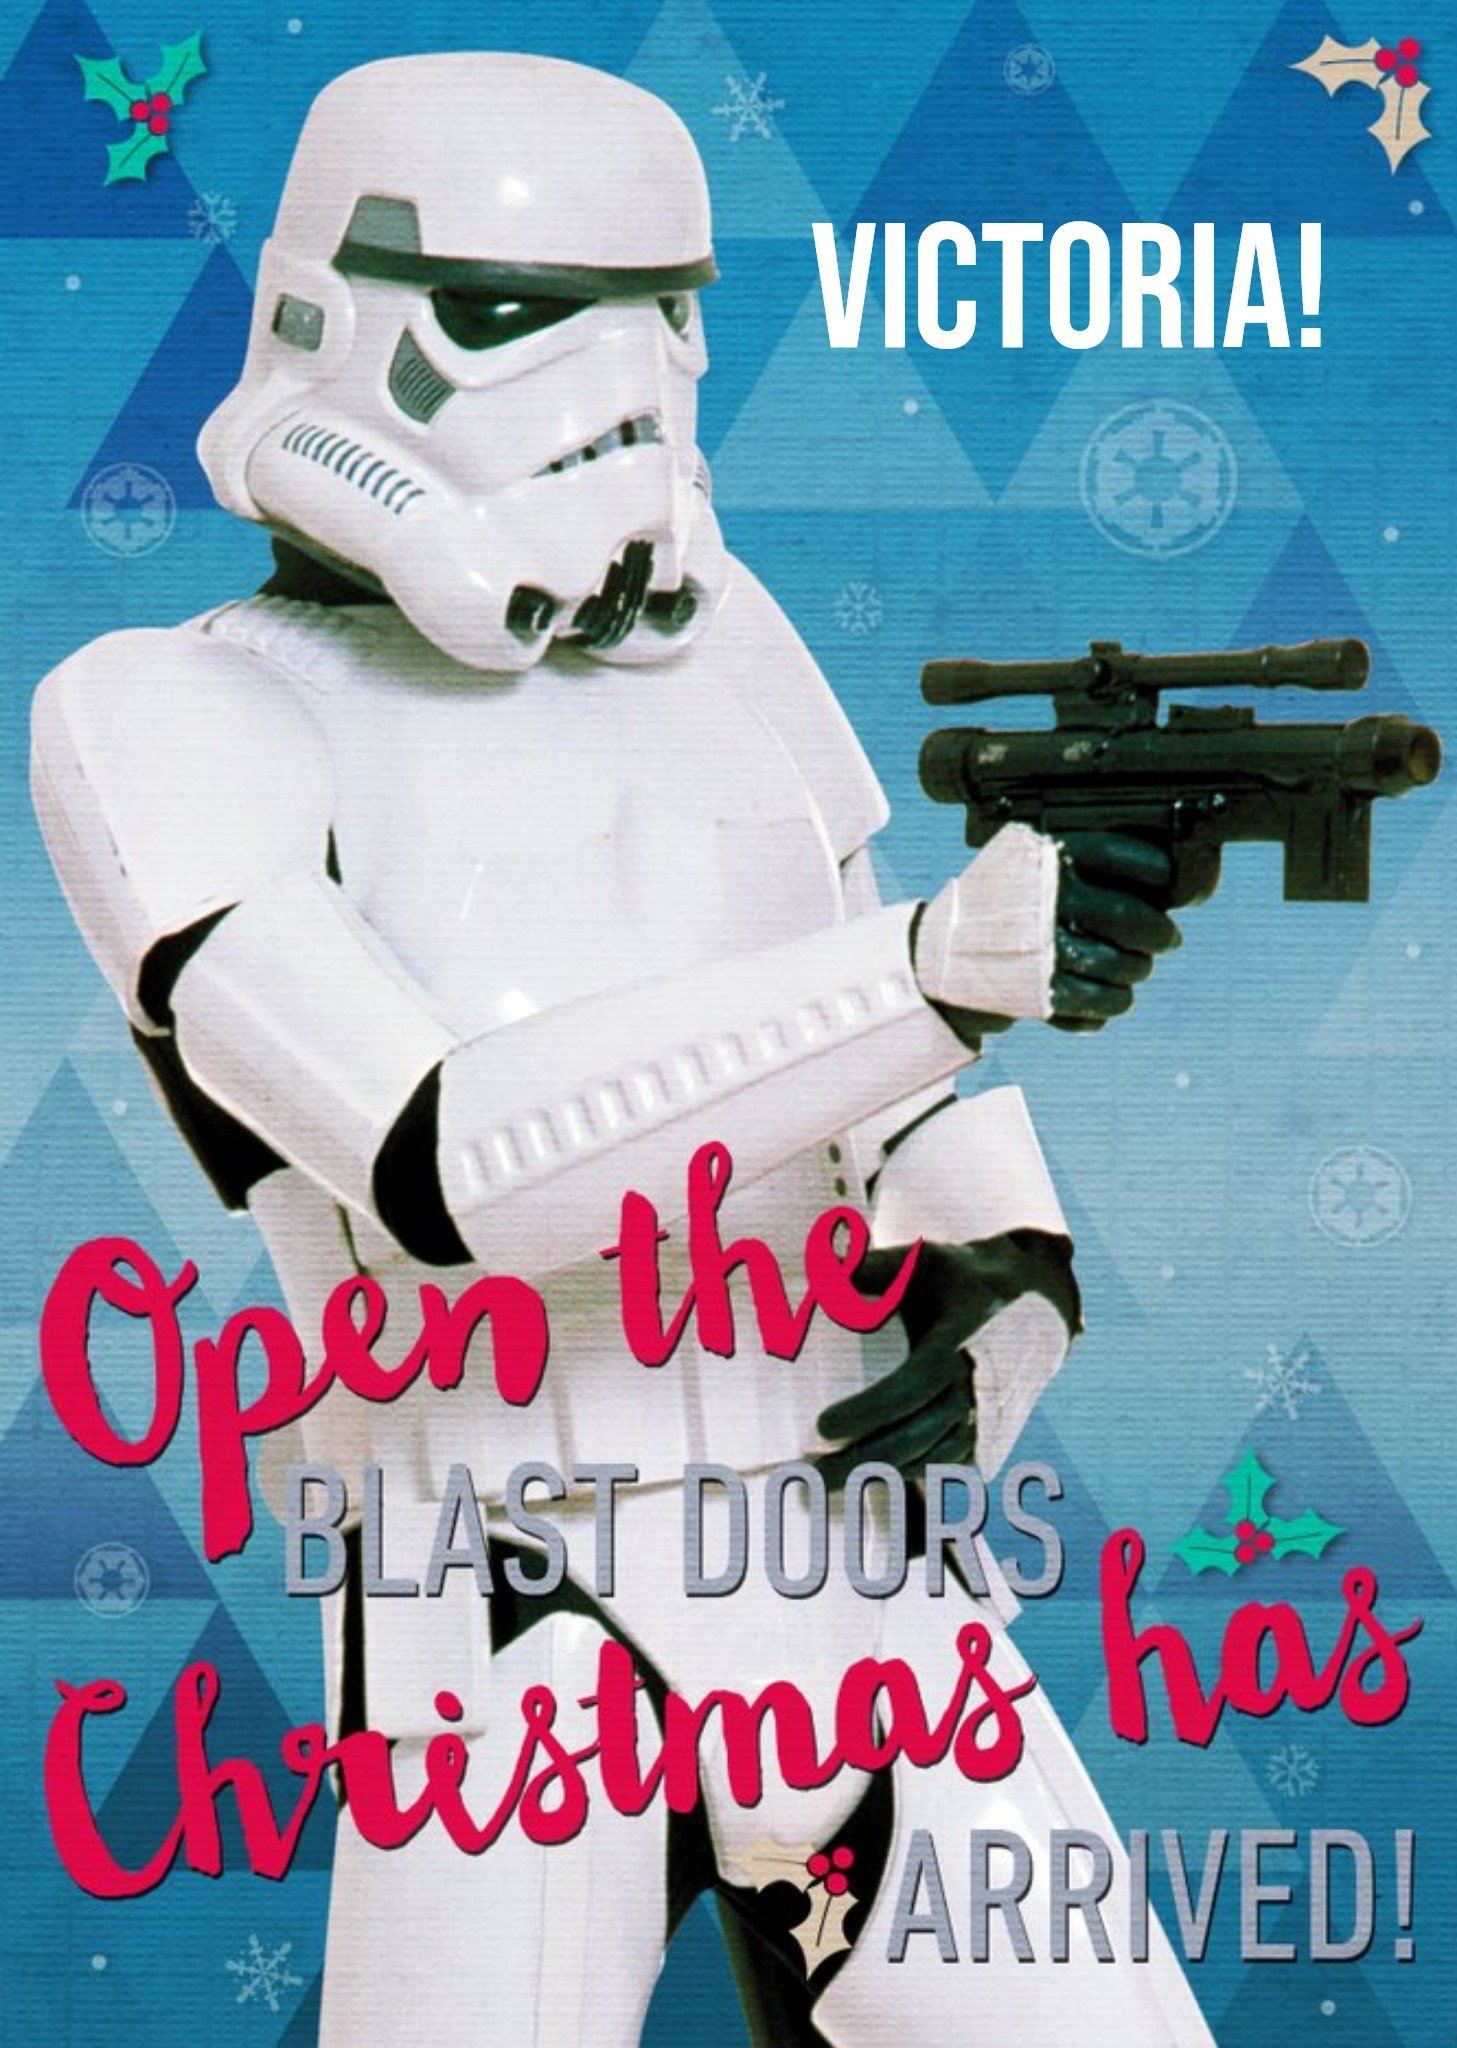 Disney Star Wars Stormtrooper Personalised Christmas Card, Large